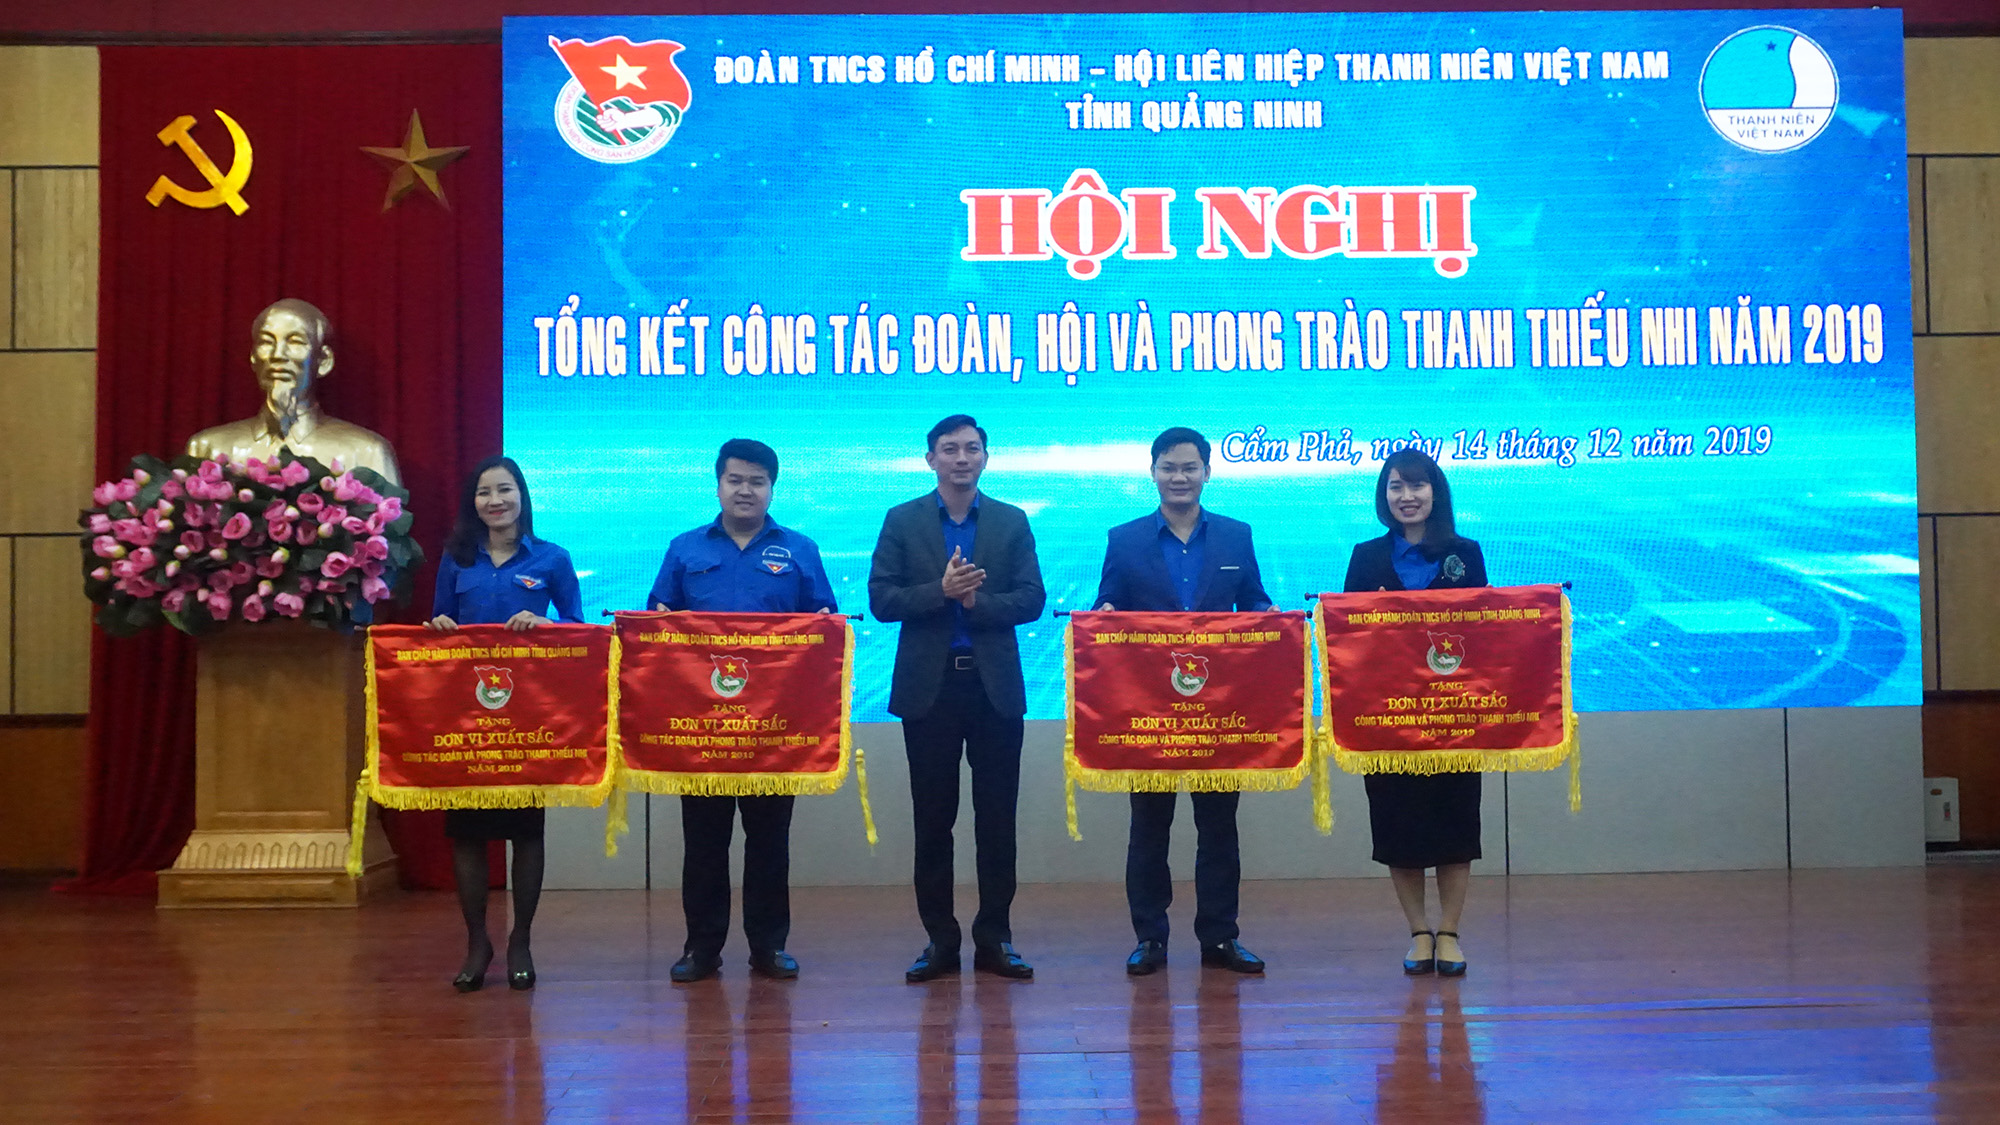 Tỉnh Đoàn trao cờ Đơn vị xuất sắc công tác Đoàn và Phong trào thanh thiếu nhi Quảng Ninh 2019 cho các đơn vị xuất sắc..